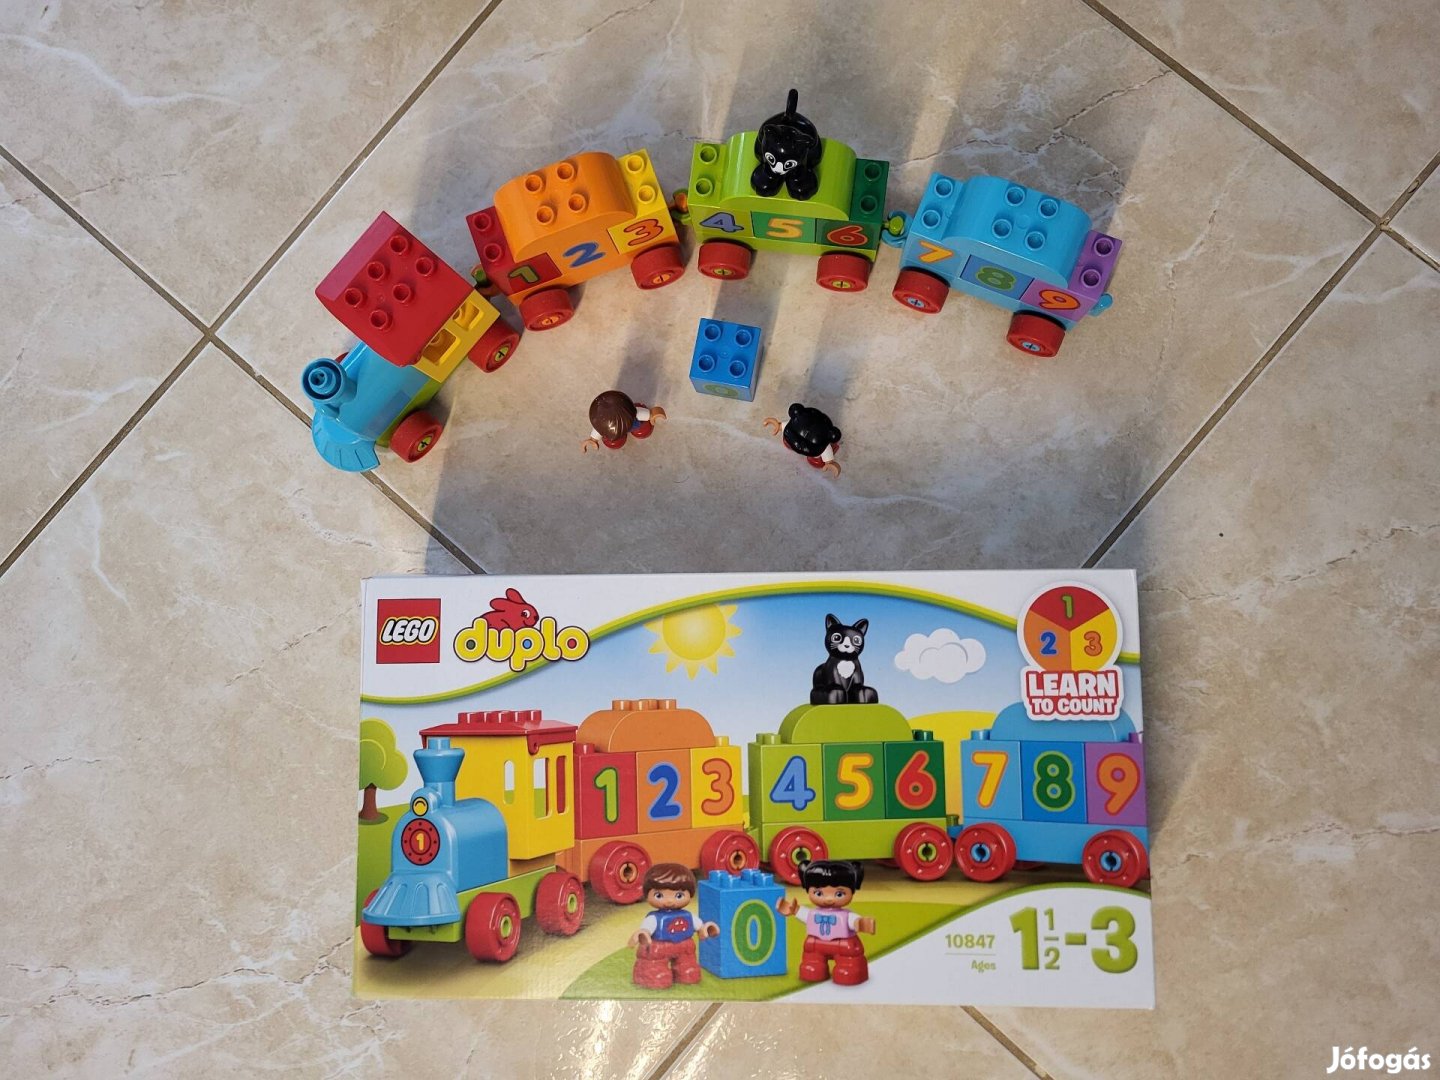 10847 - LEGO Duplo Kezdőkészletek - Számvonat